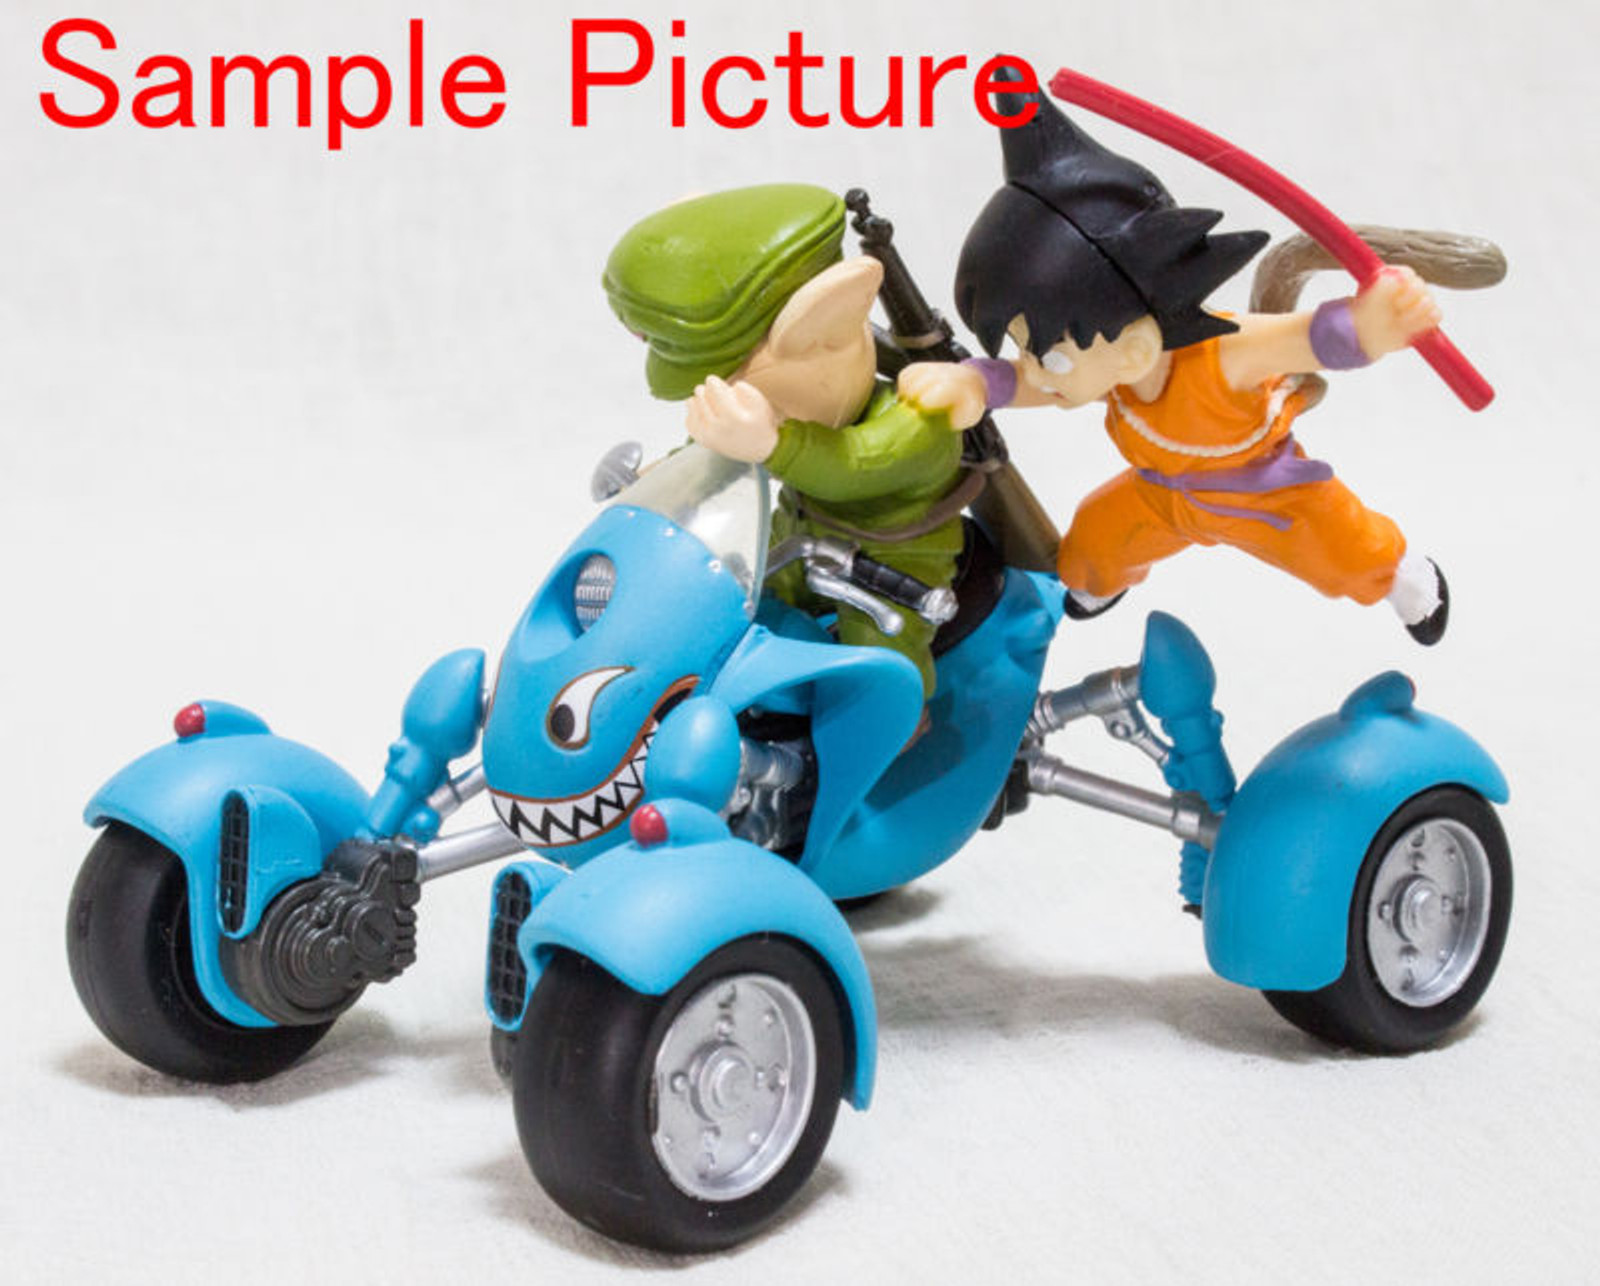 Dragon Ball Z Mecha Collection Mini Figure Gokou & Oolong Vehicle JAPAN ANIME